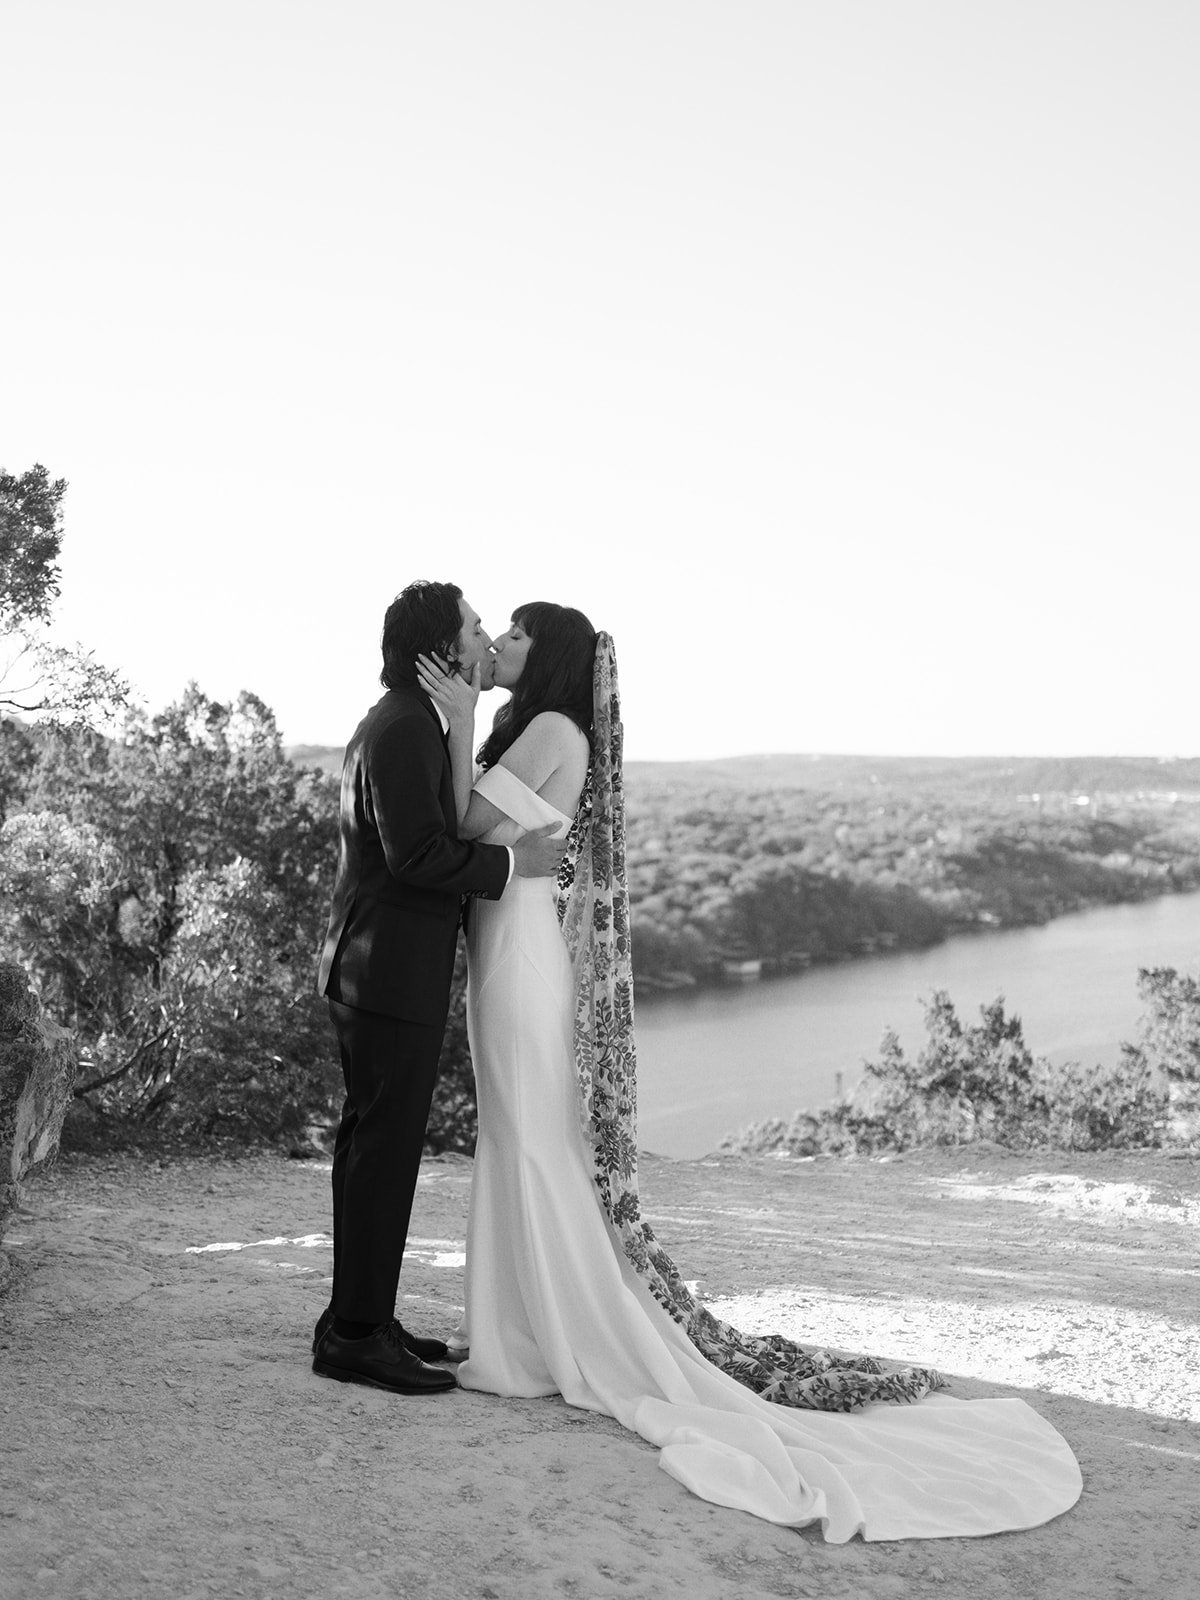 Best-Austin-Wedding-Photographers-Elopement-Film-35mm-Asheville-Santa-Barbara-Laguna-Gloria-16.jpg